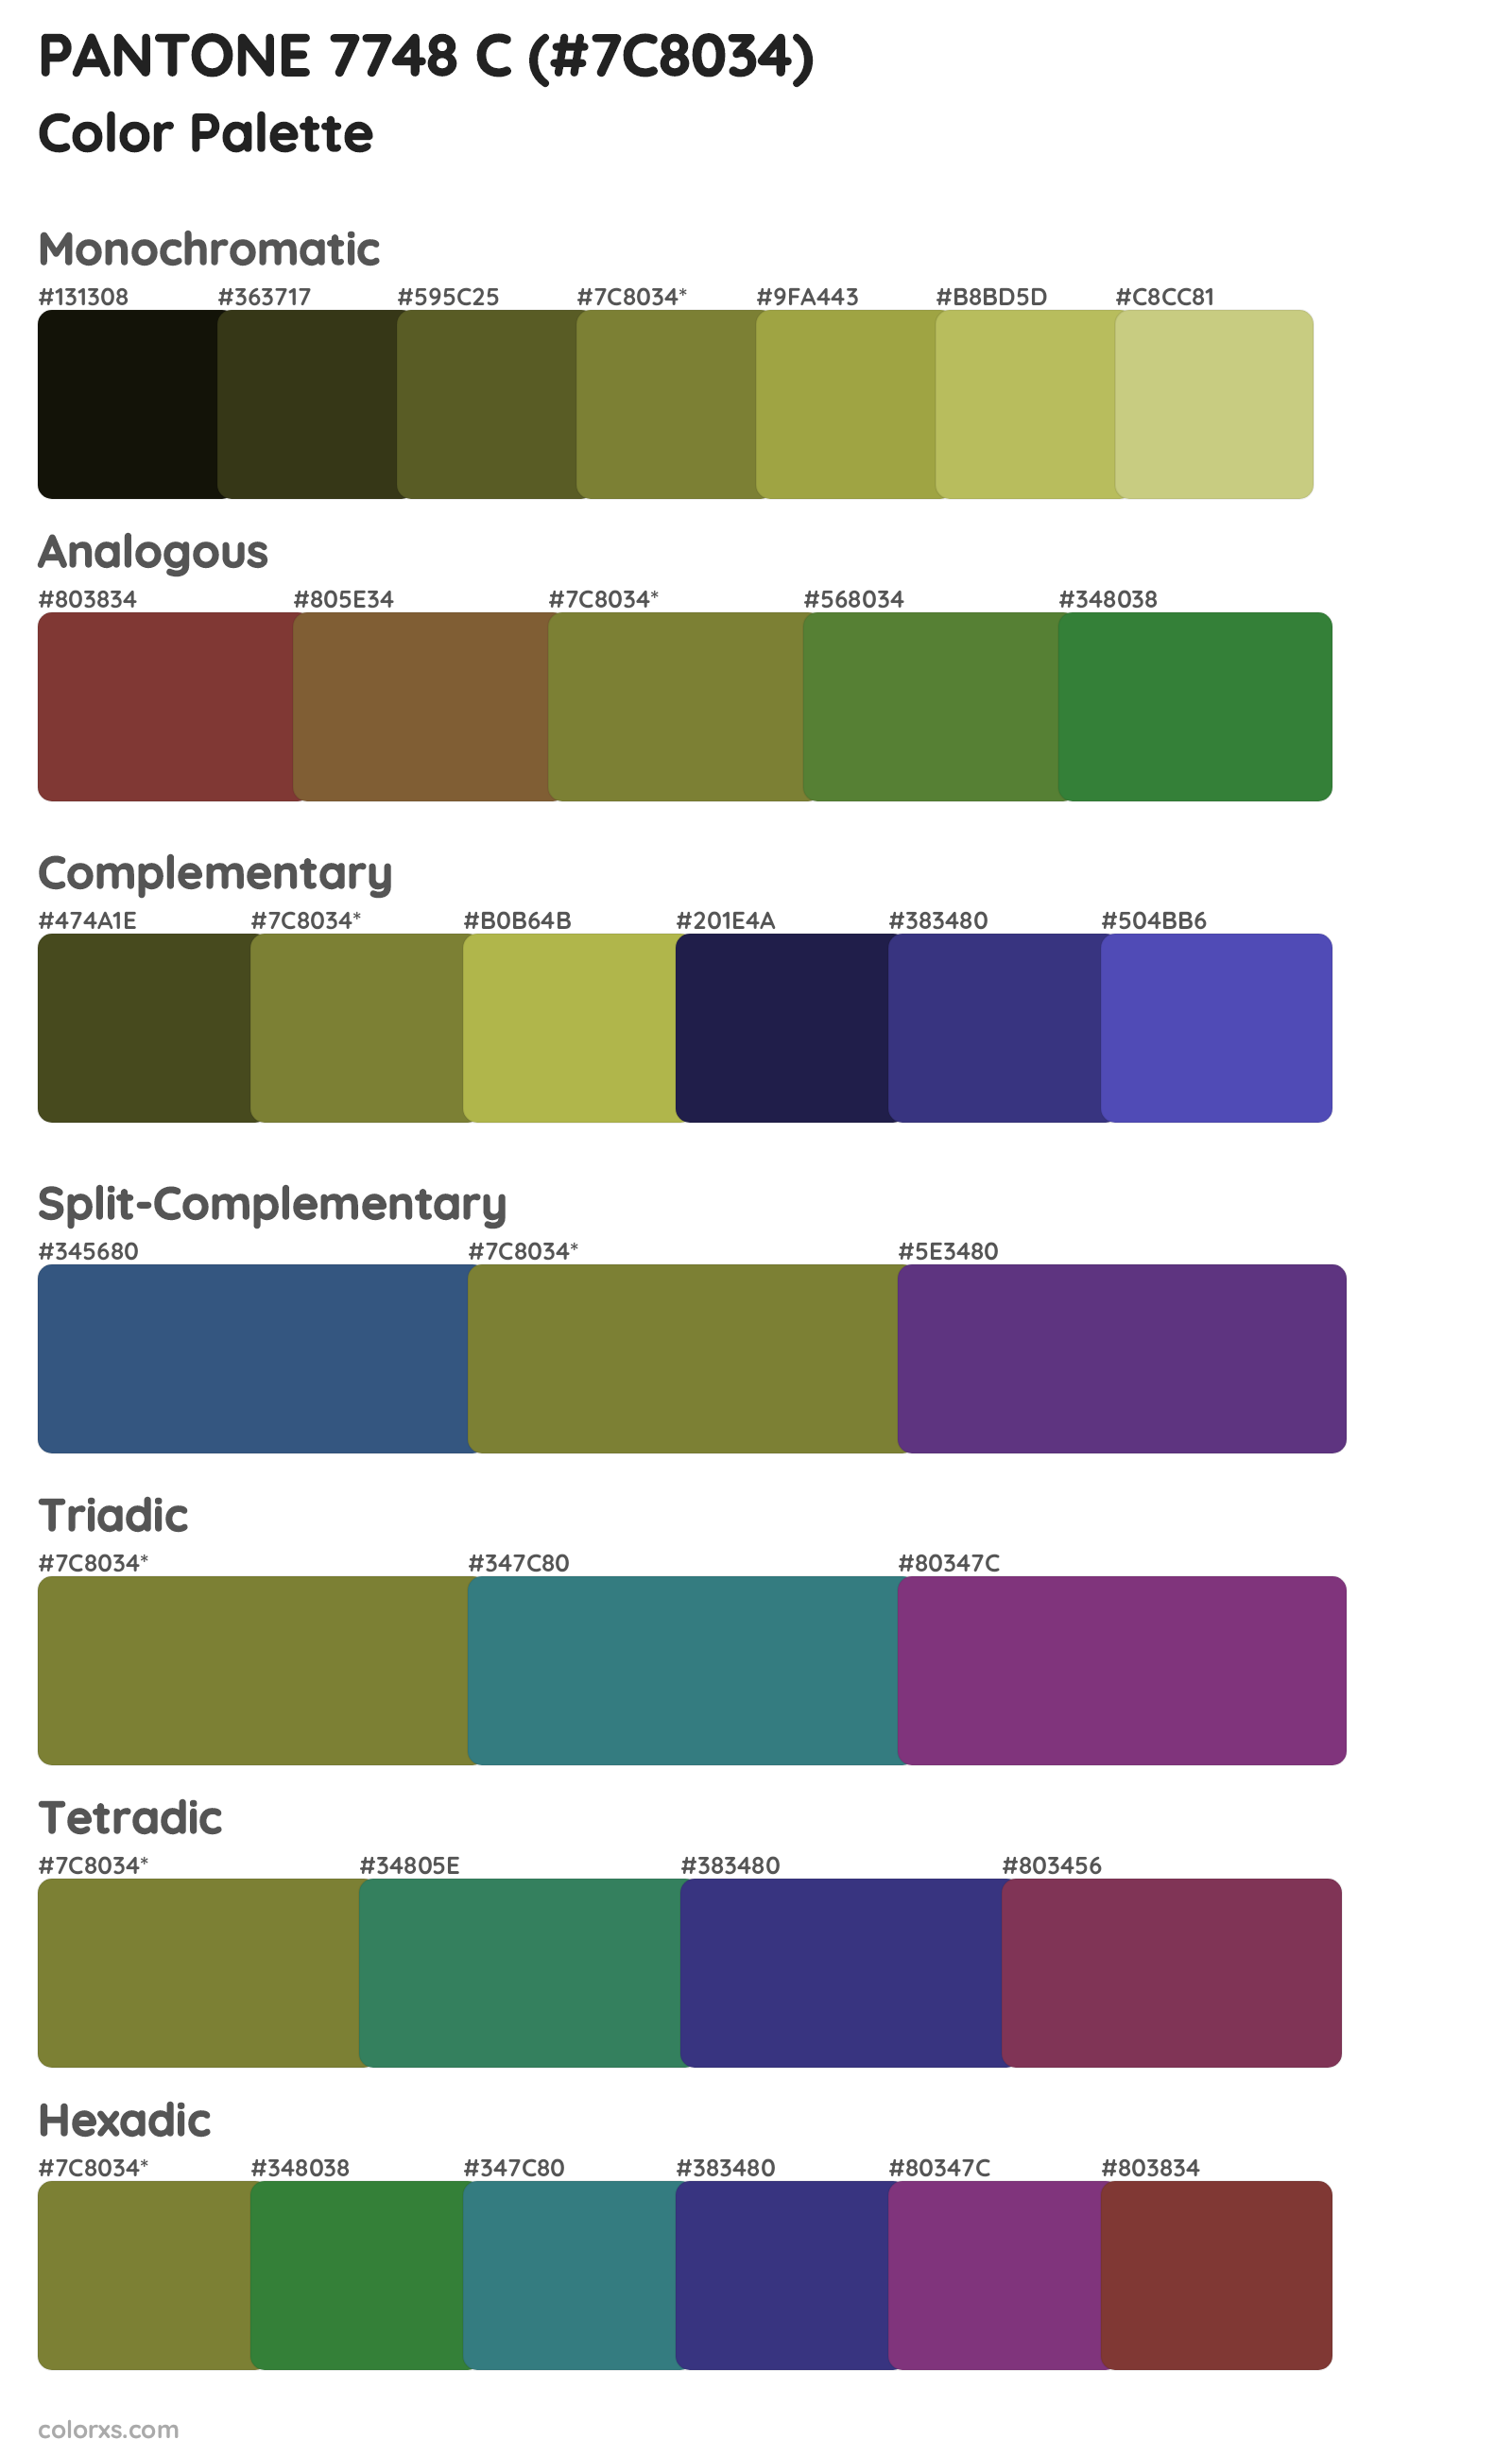 PANTONE 7748 C Color Scheme Palettes